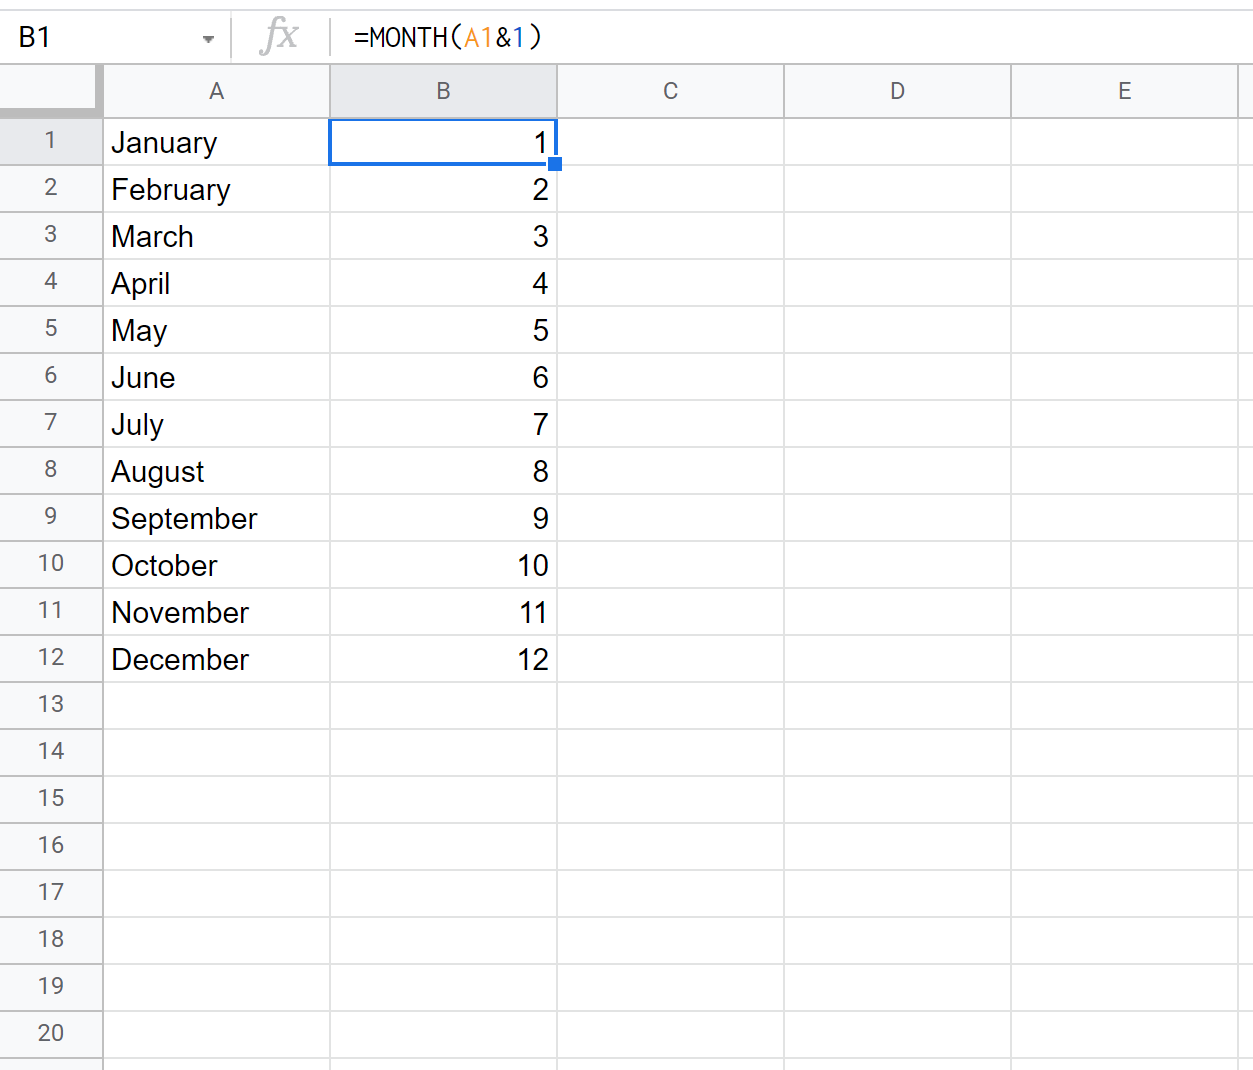 преобразовать название месяца в номер месяца в Google Sheets